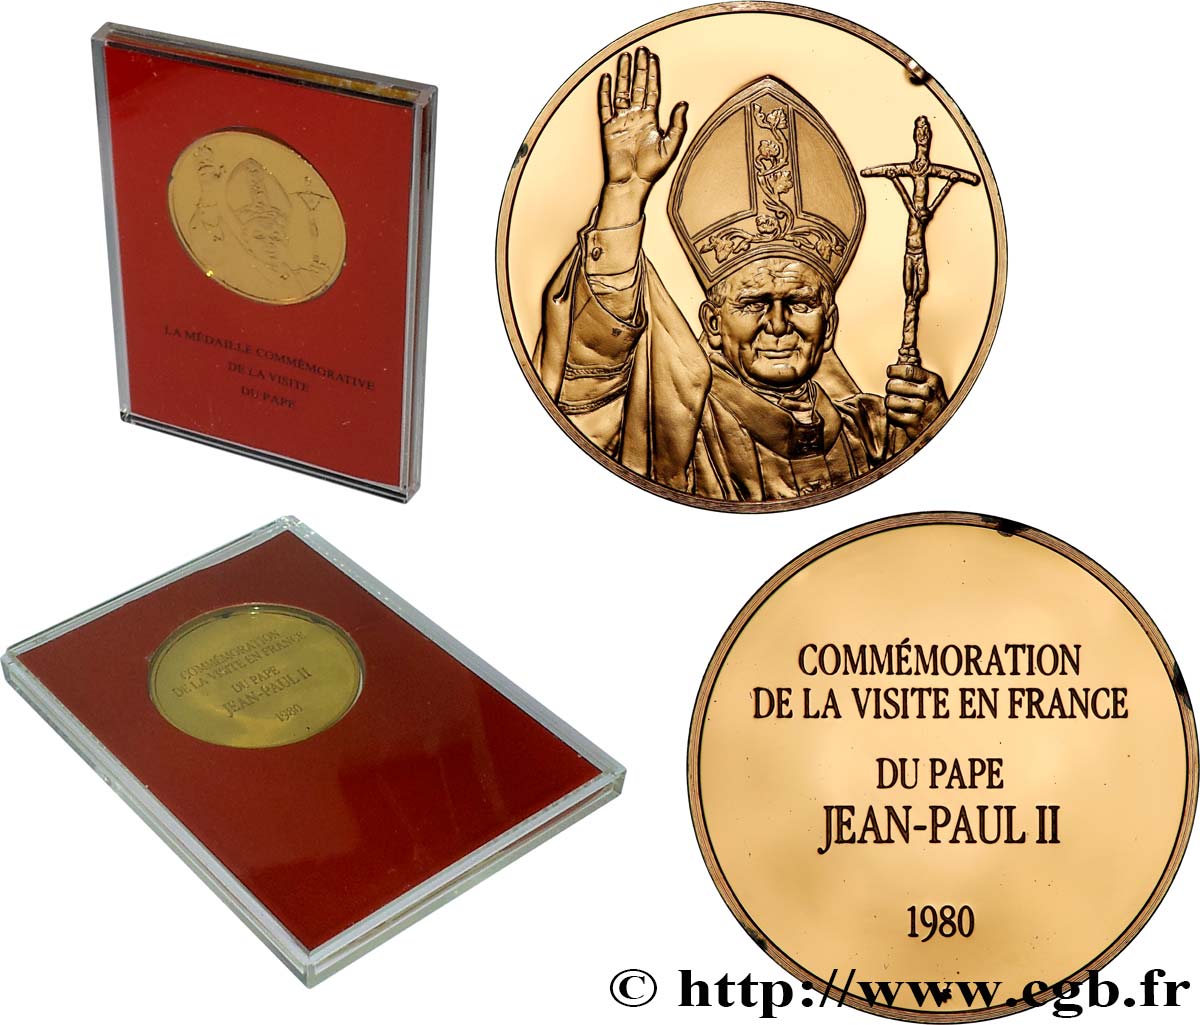 JEAN-PAUL II (Karol Wojtyla) Médaille, Commémoration de la visite du Pape Jean-Paul II en France FDC